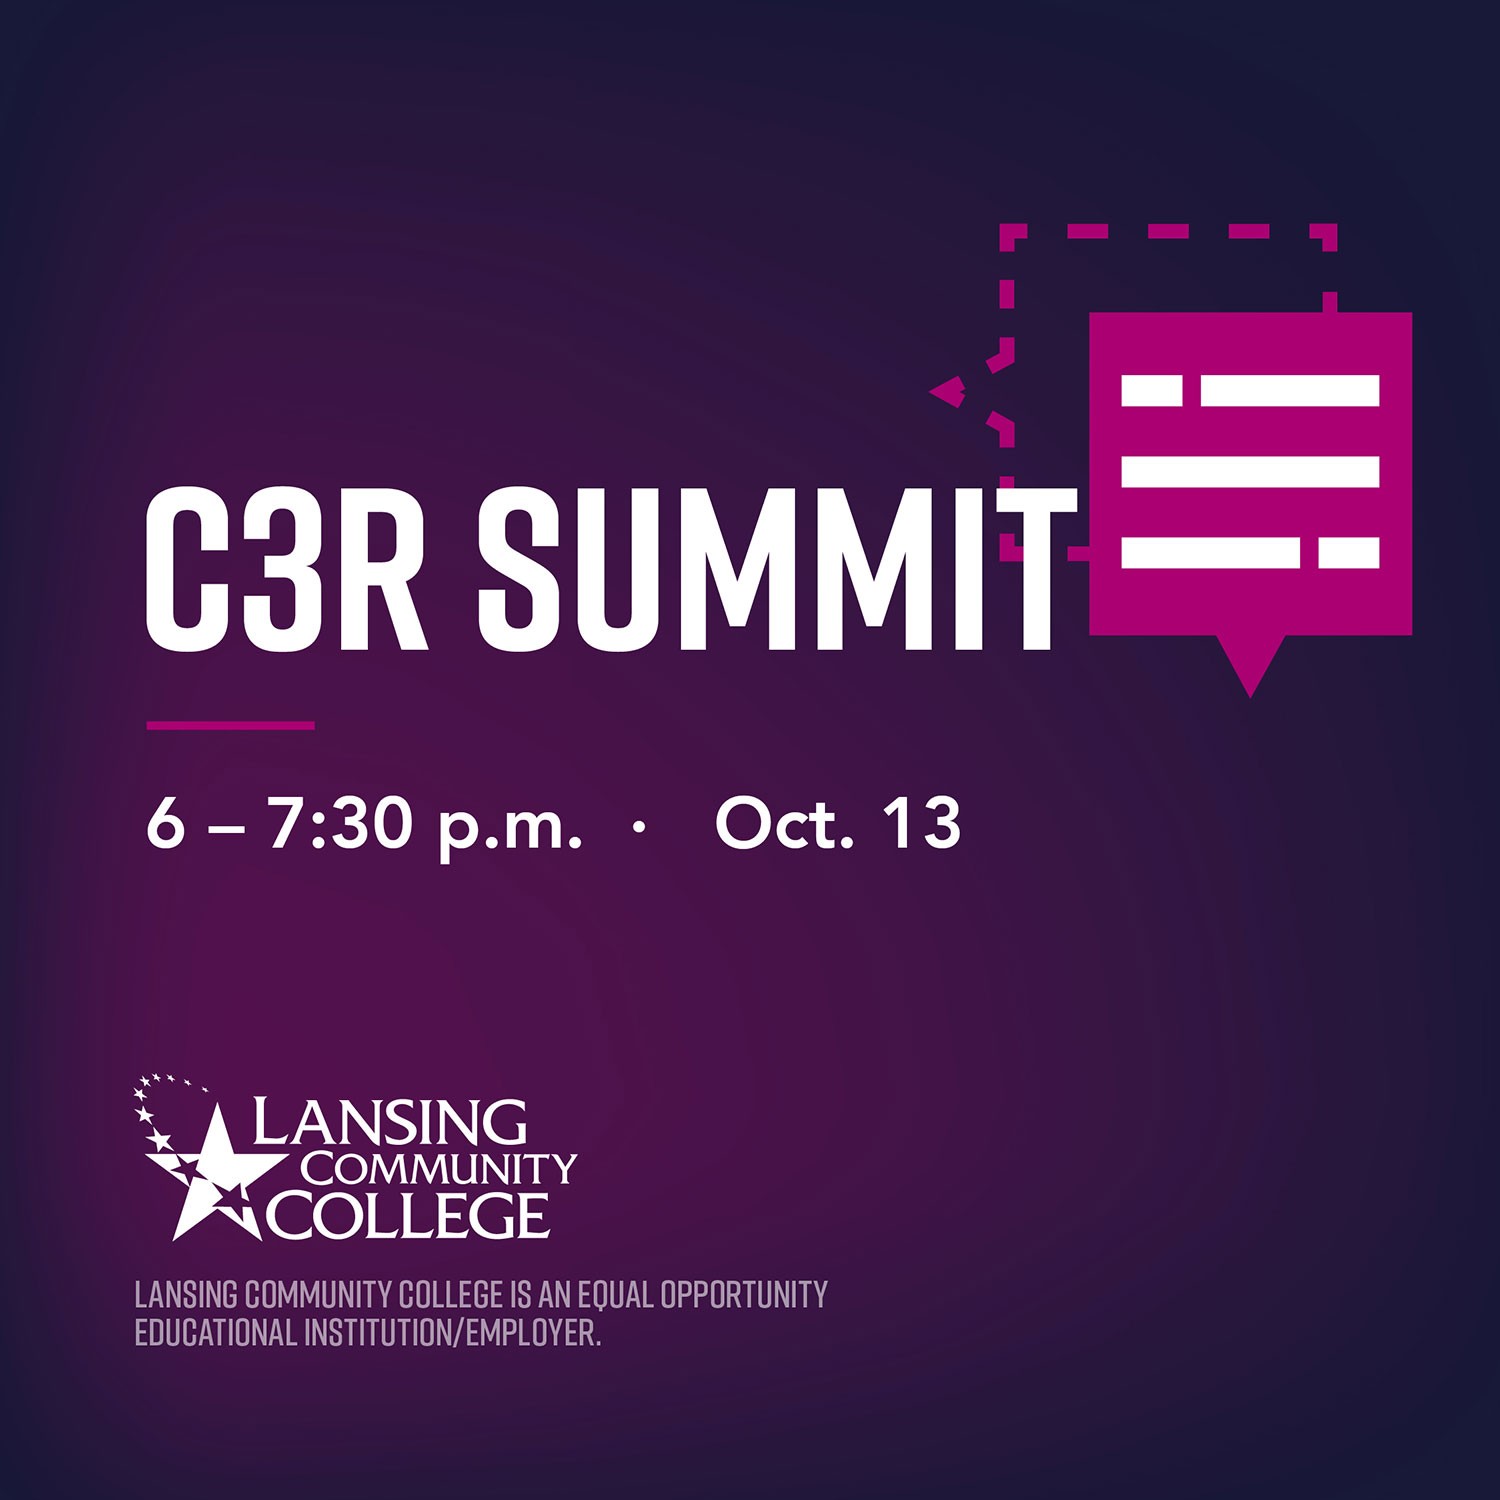 Lansing Community College C3R Summit - 6-7:30 - October 13, 2020